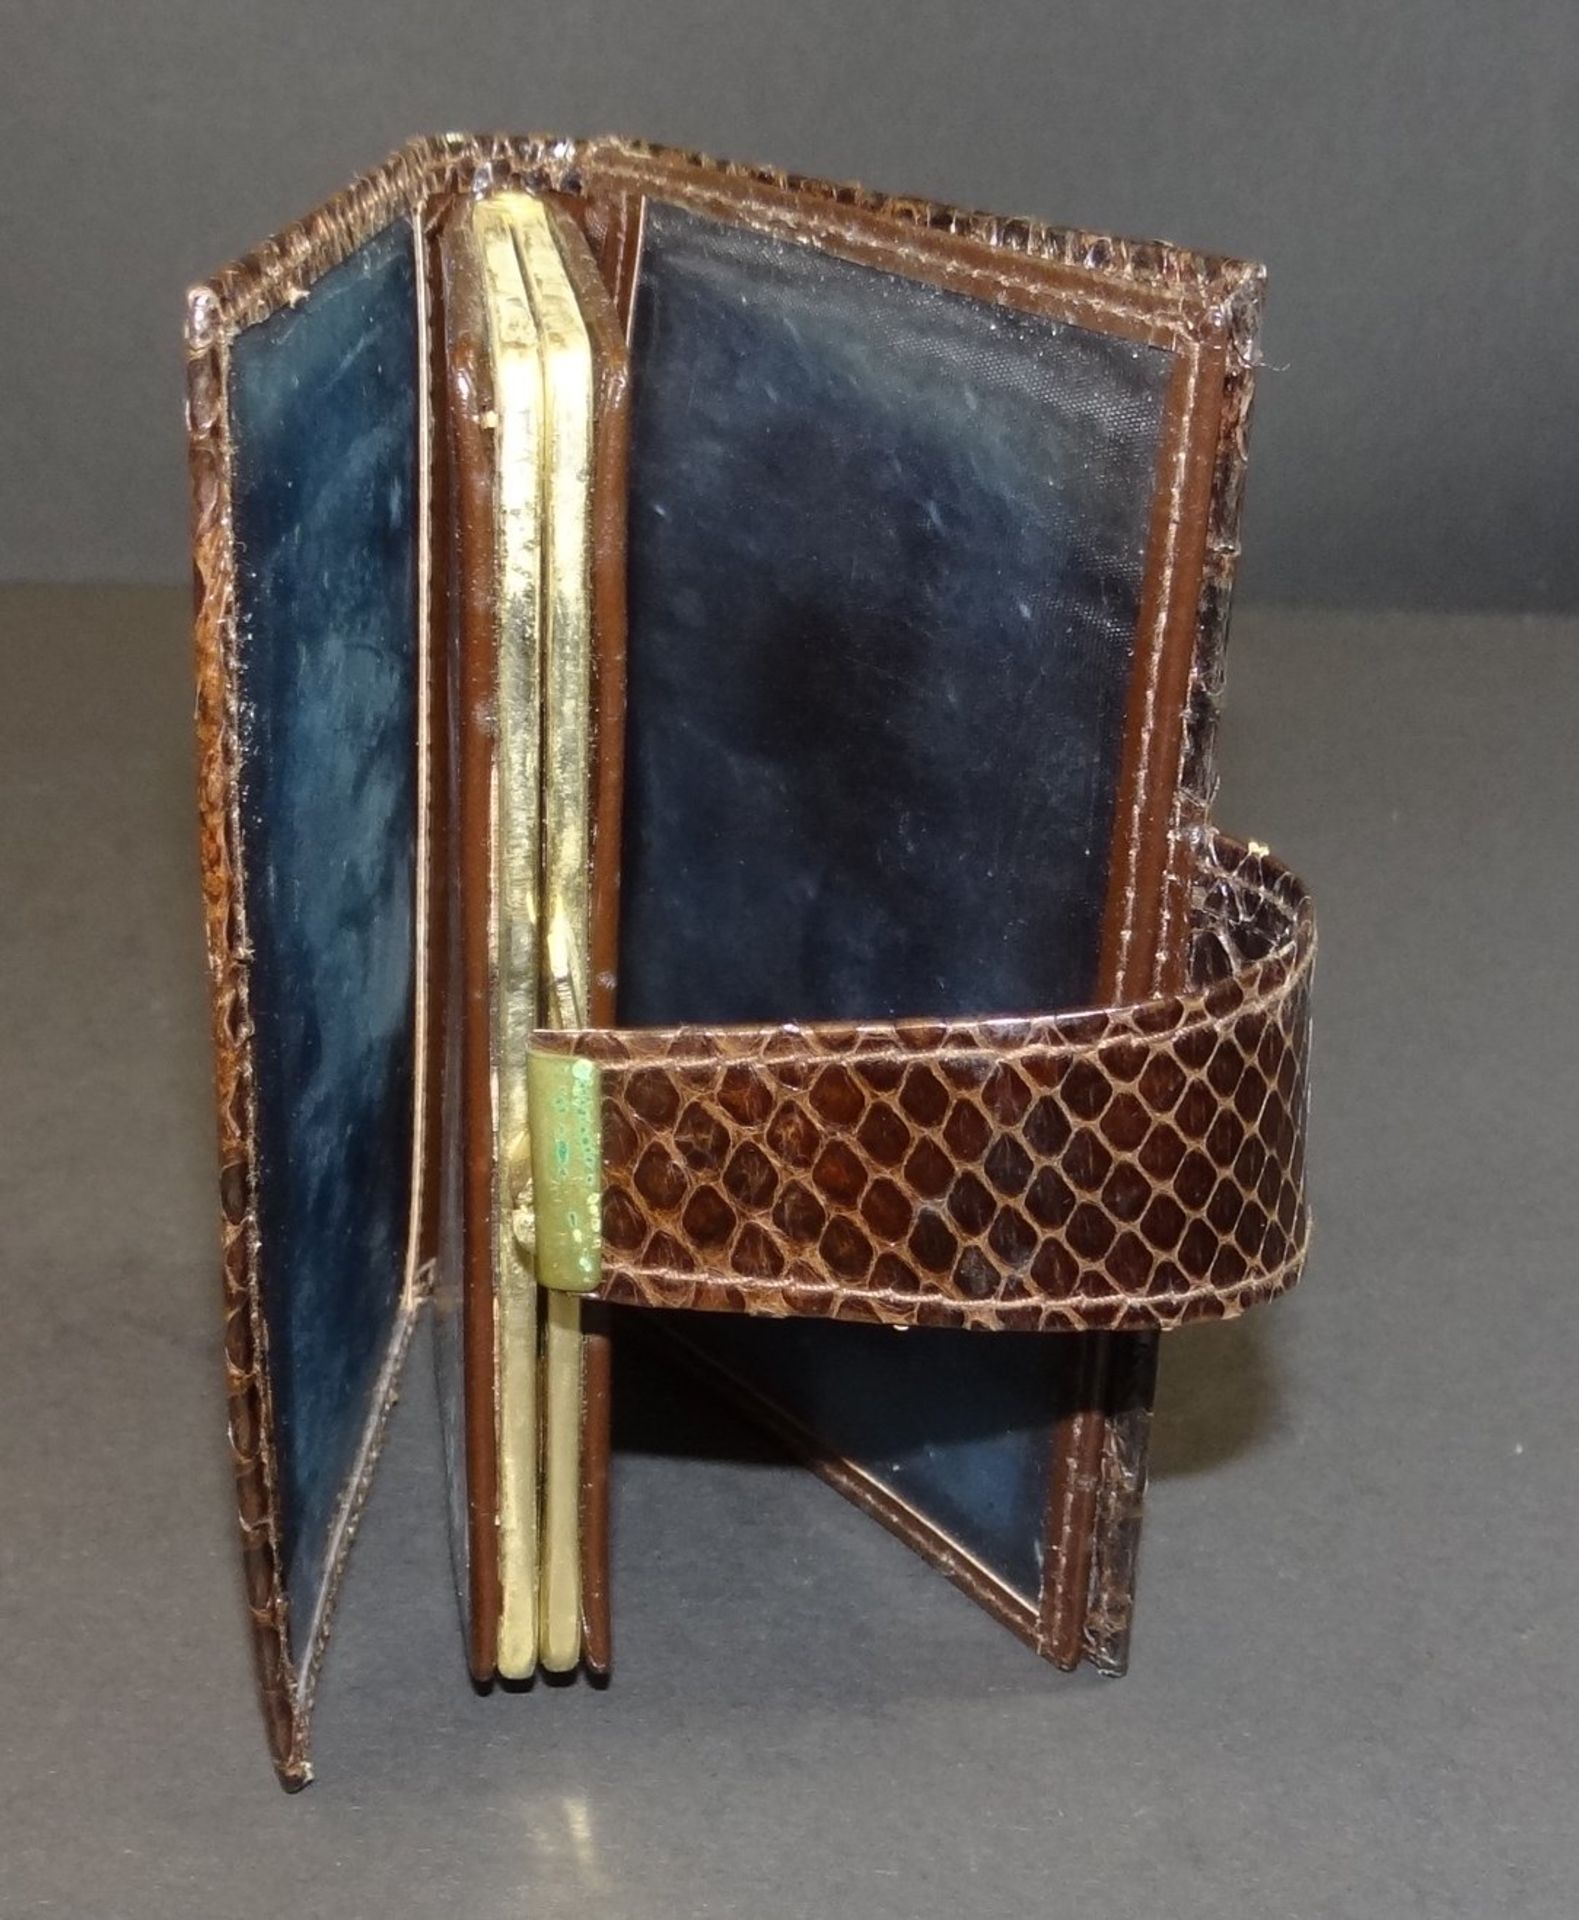 kl. Brieftasche, Reptilienleder, 13x10 cm - Bild 2 aus 5